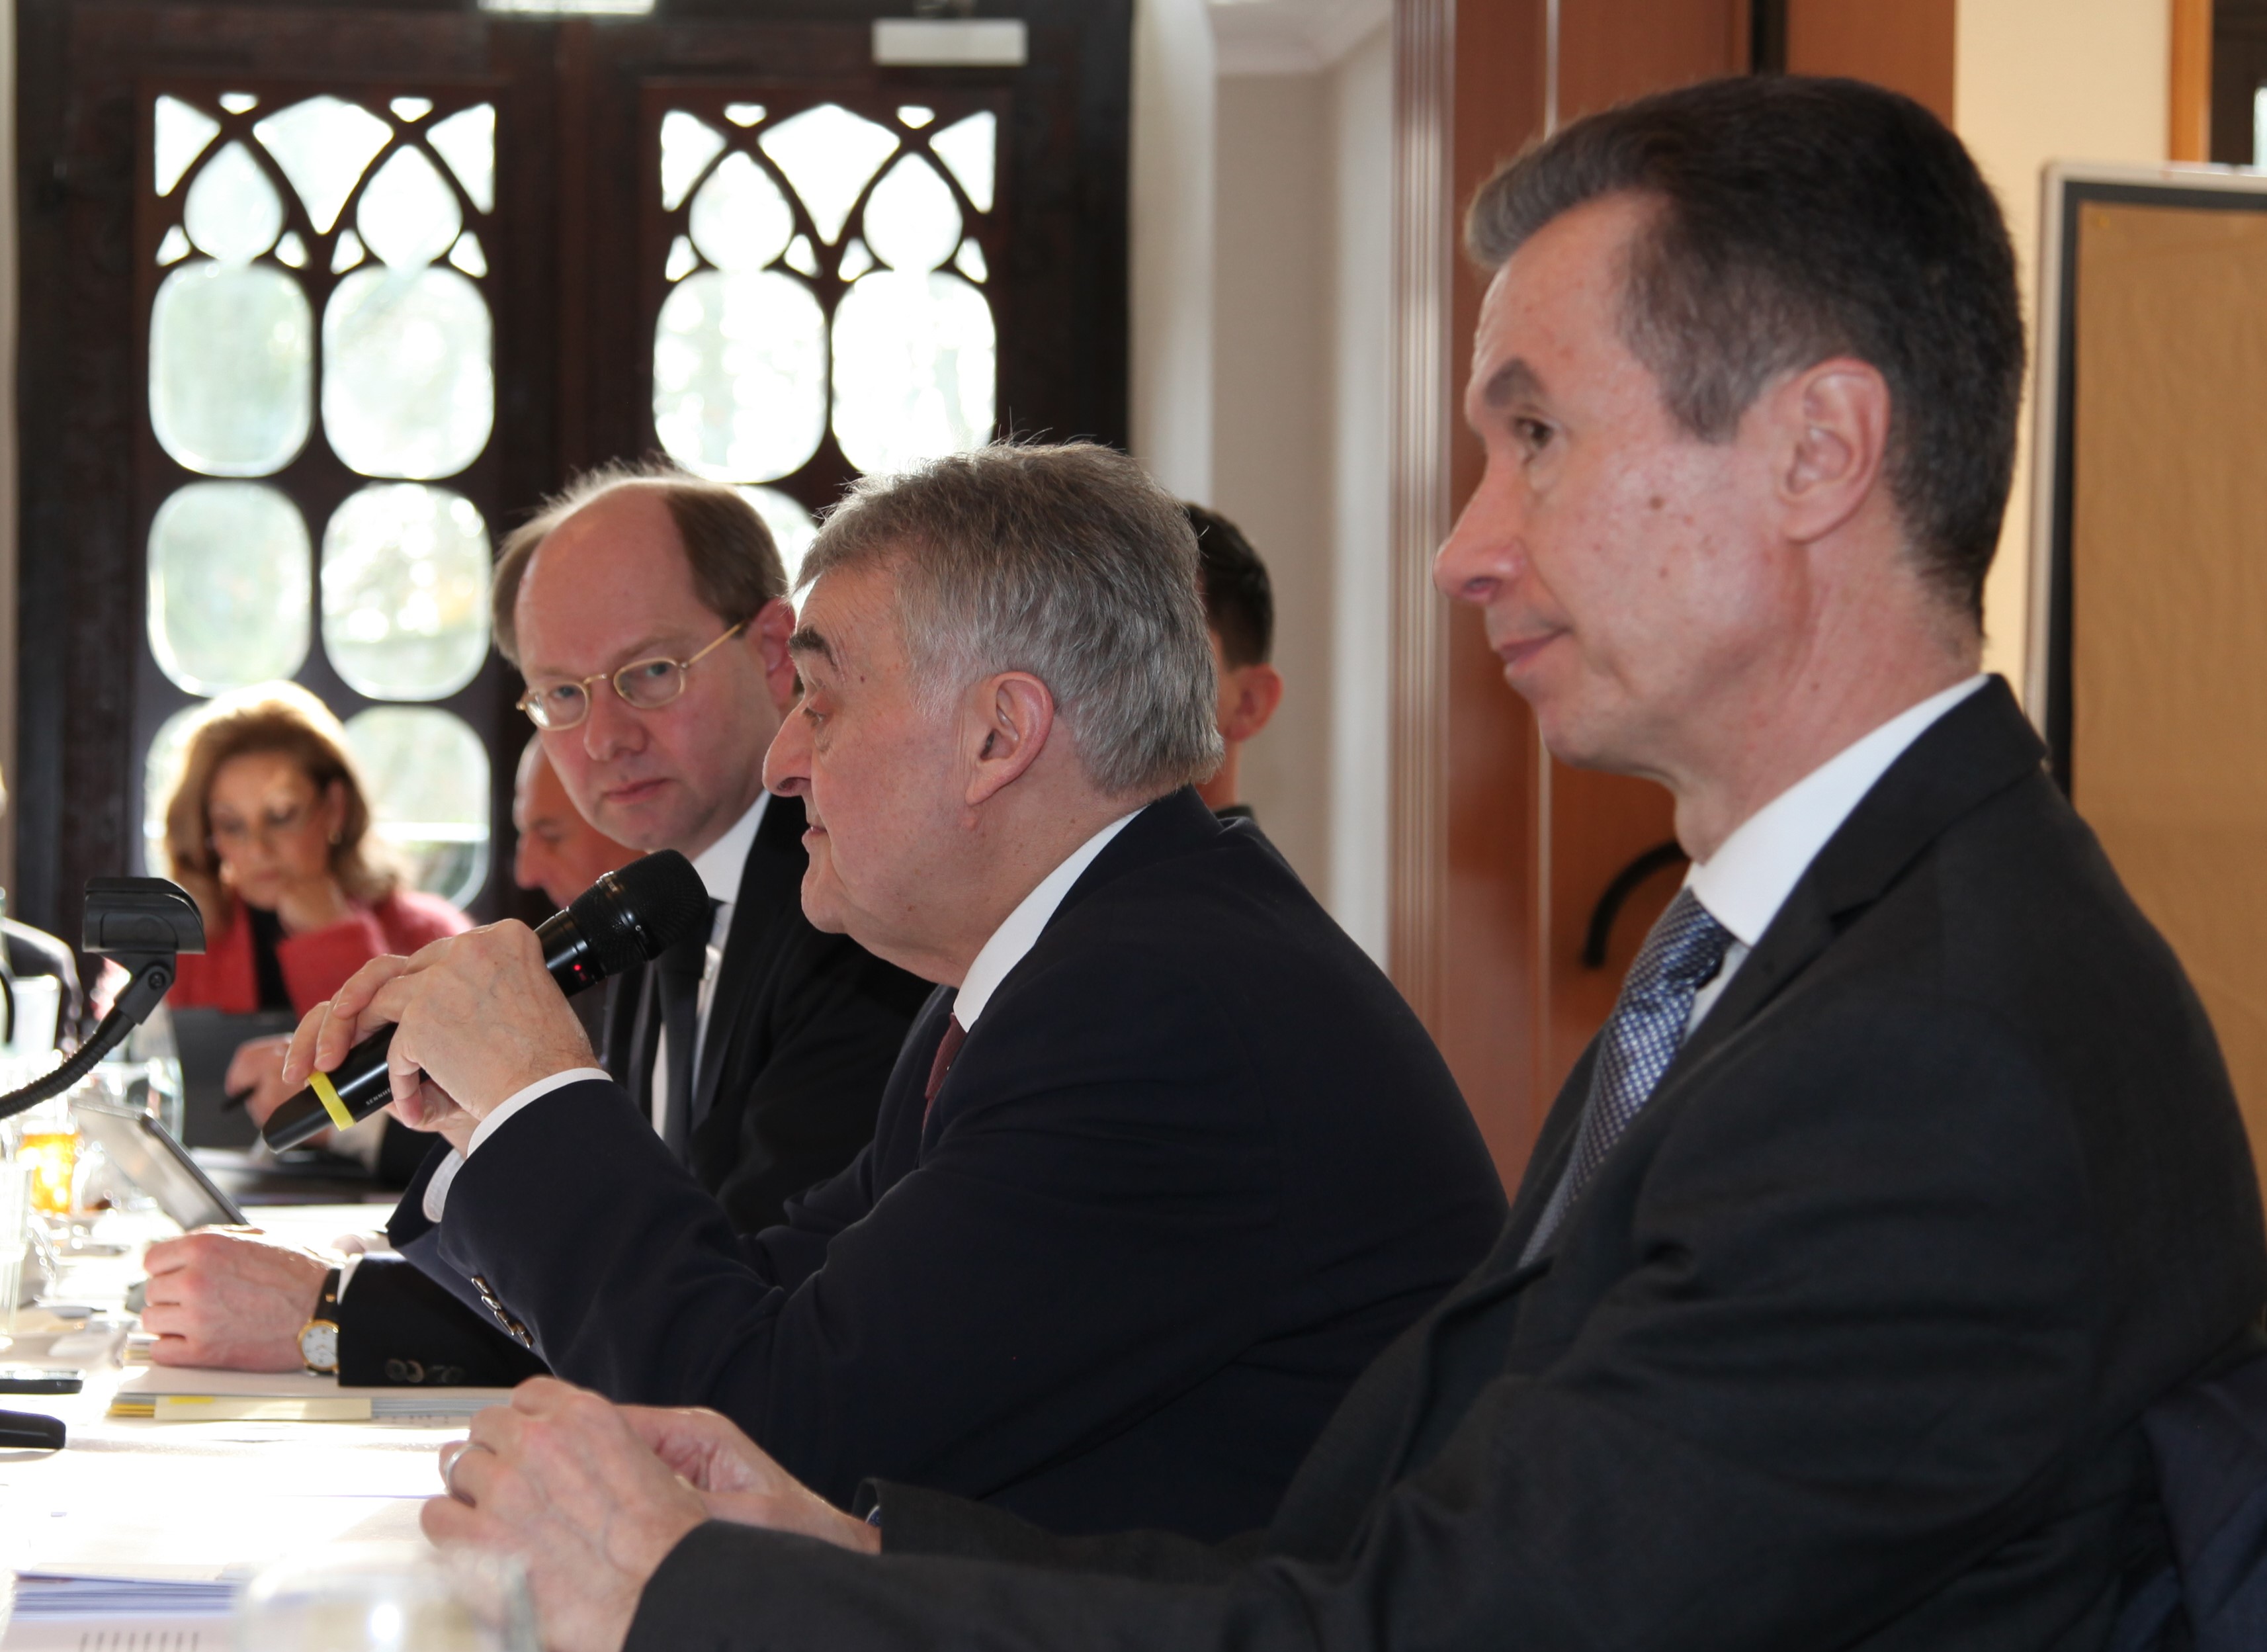 Innenminister Herbert Reul im Gespräch mit dem Vorstand des LKT NRW in Wegberg, auf dem Foto mit Präsident Landrat Dr. Olaf Gericke, Kreis Warendorf.